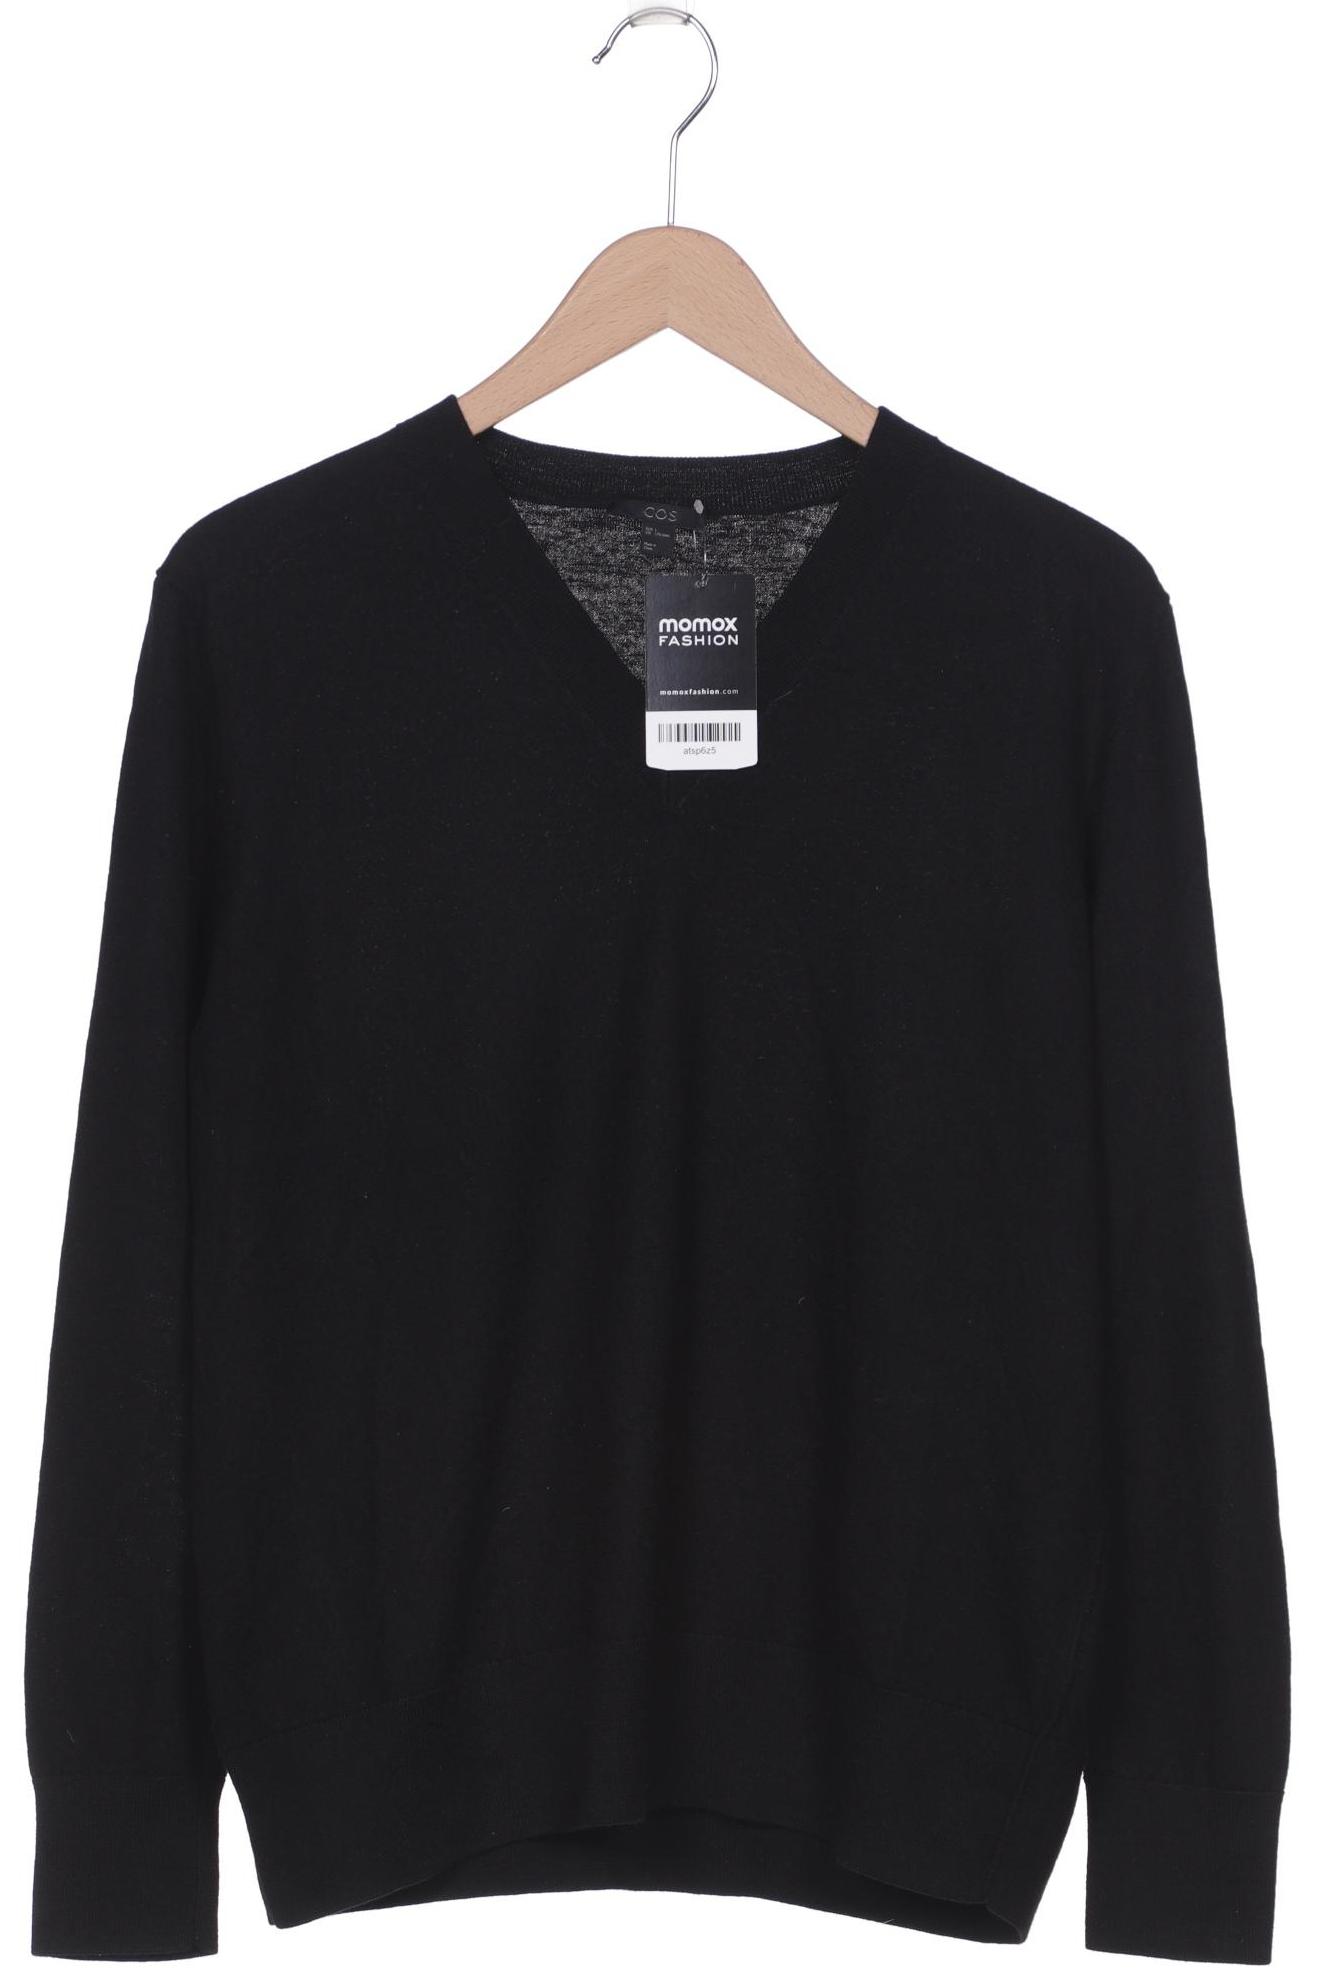 COS Damen Pullover, schwarz, Gr. 42 von COS